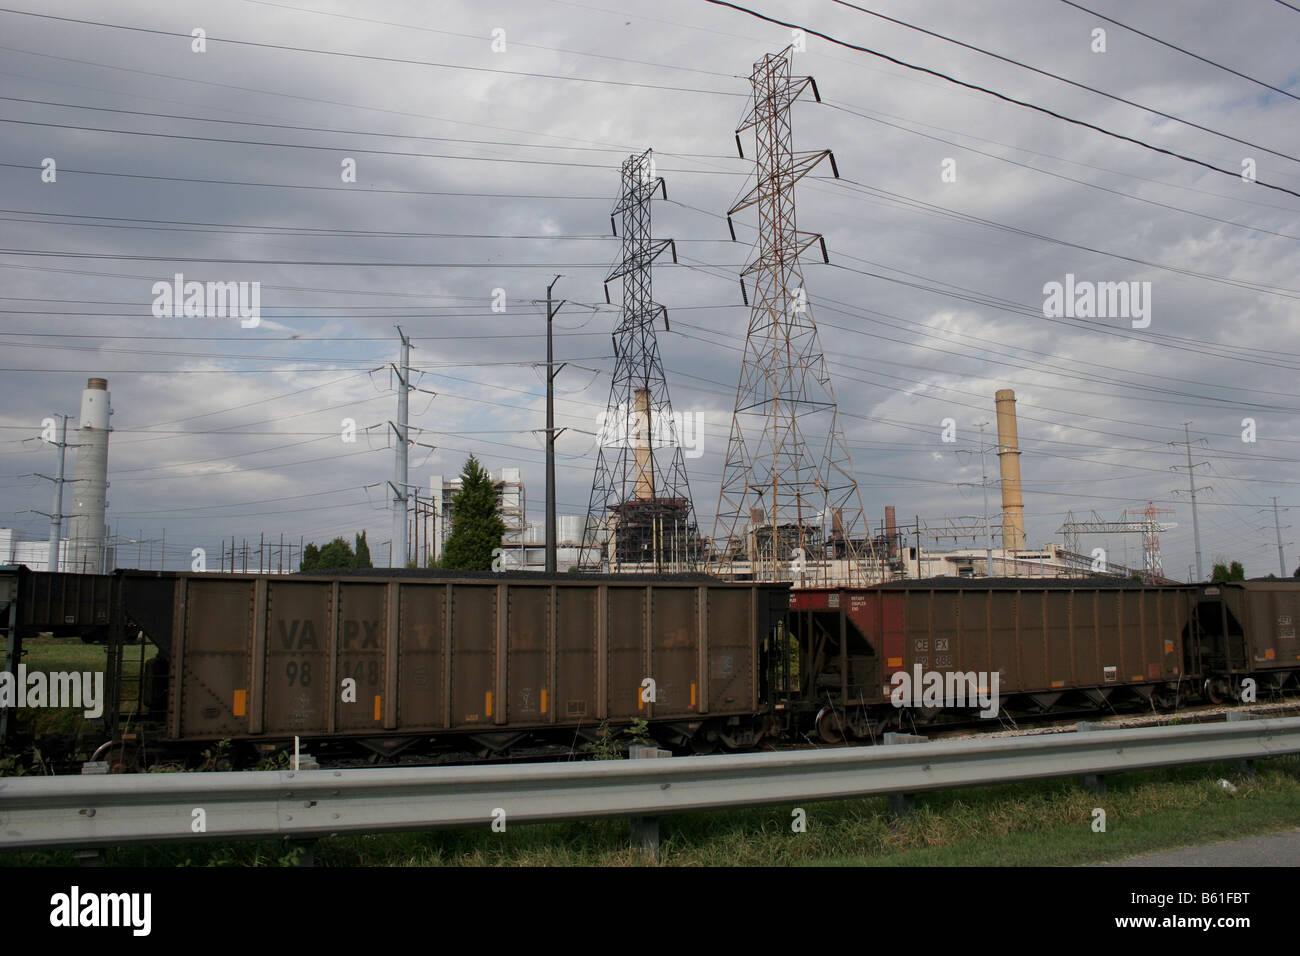 Train de fret offrant à charbon centrale électrique pour produire de l'électricité Banque D'Images